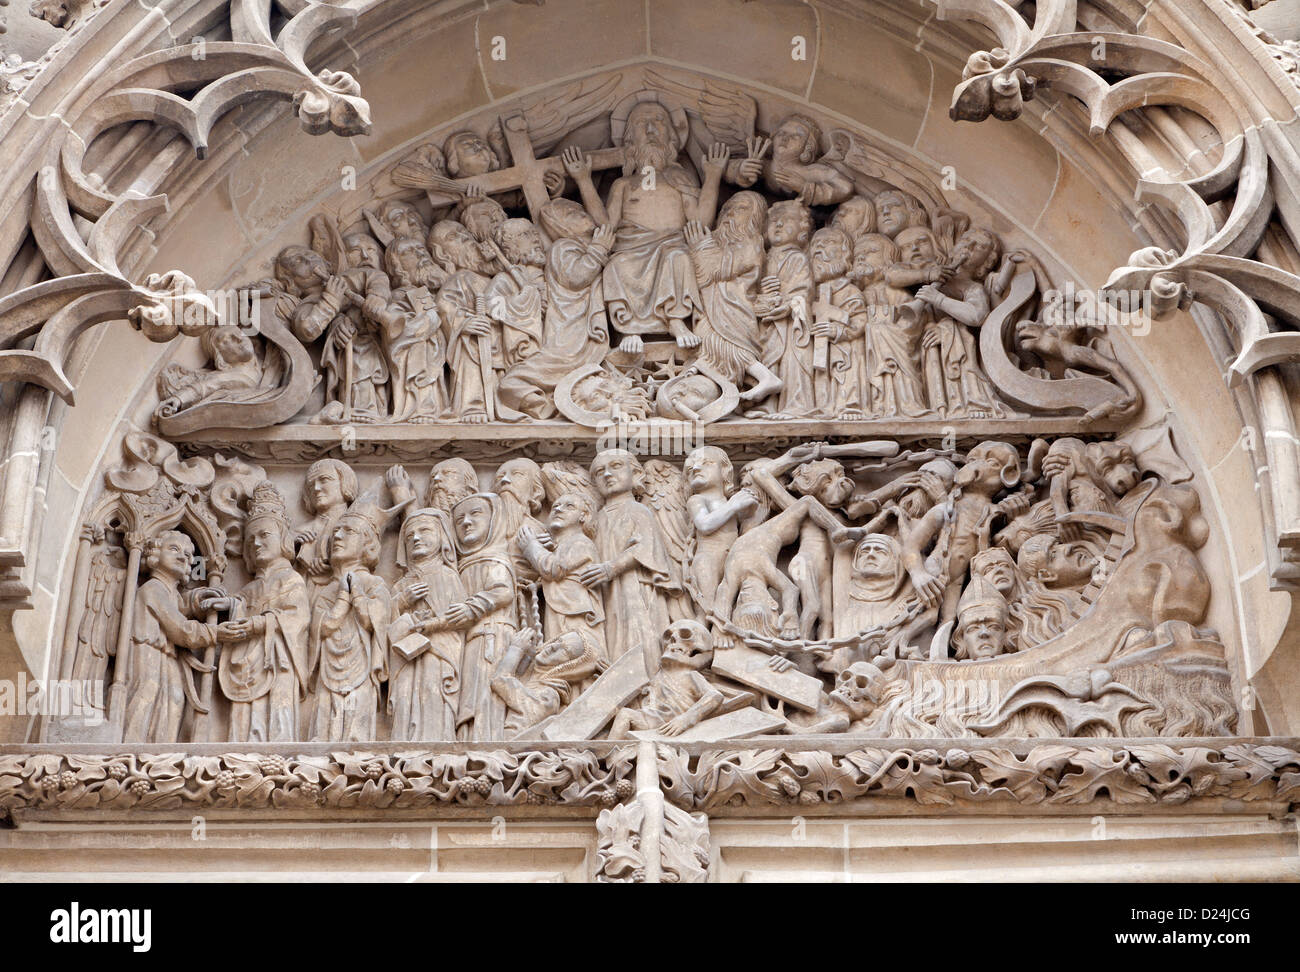 KOSICE - Gennaio 3: rilievo della sentenza ultima scena dal portale nord di Santa Elisabetta cattedrale gotica del 3 gennaio 2013 Foto Stock